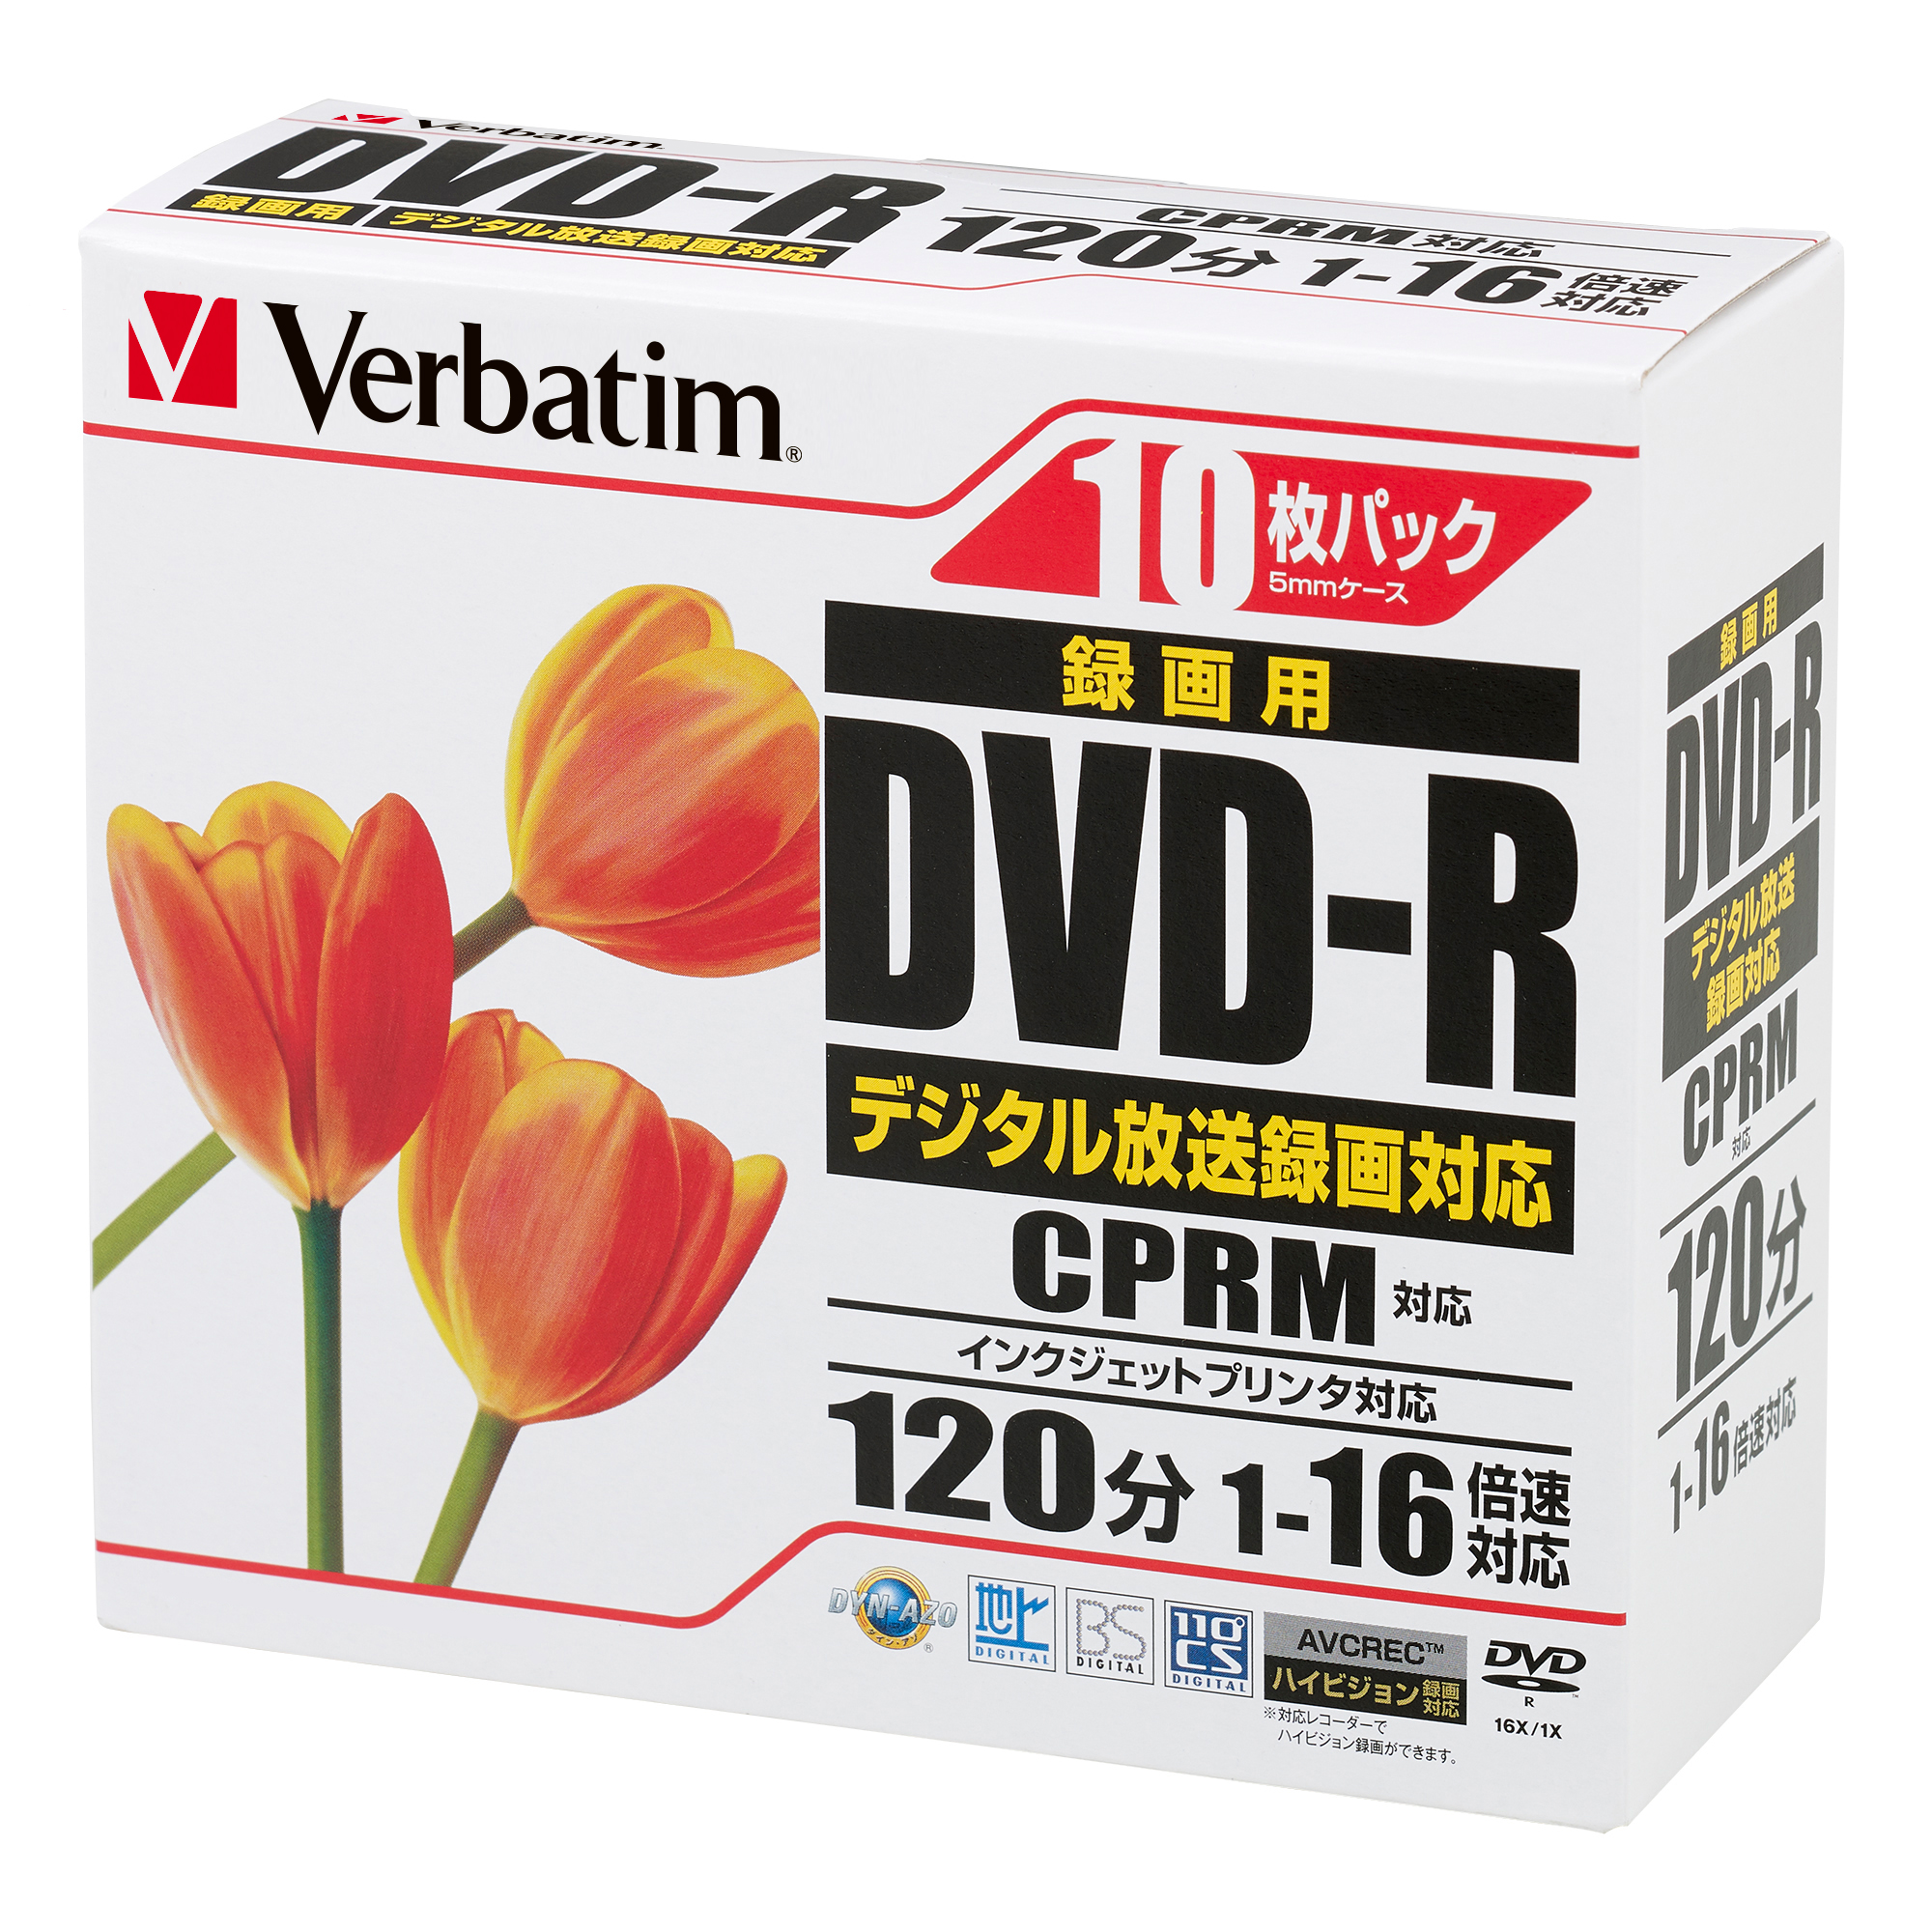 バーベイタム VHR12JPP10 16倍速対応DVD-R 10枚パック 4.7GB ホワイトプリンタブルVerbatim[VHR12JPP10] 返品種別A